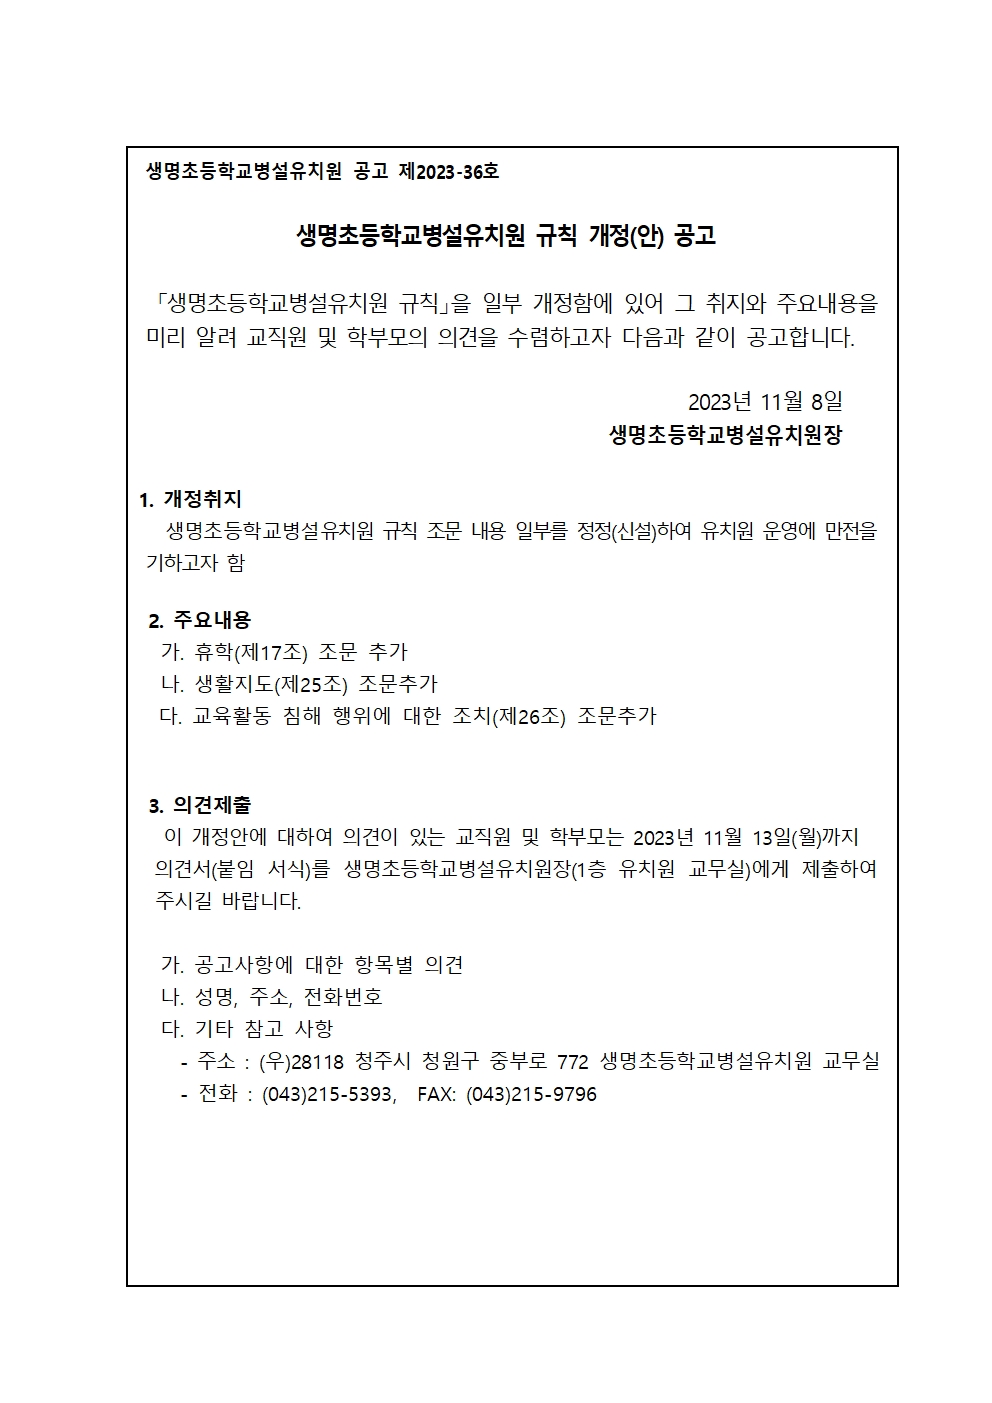 생명초등학교병설유치원 규칙 개정(안) 공고문(2023.11.6)001